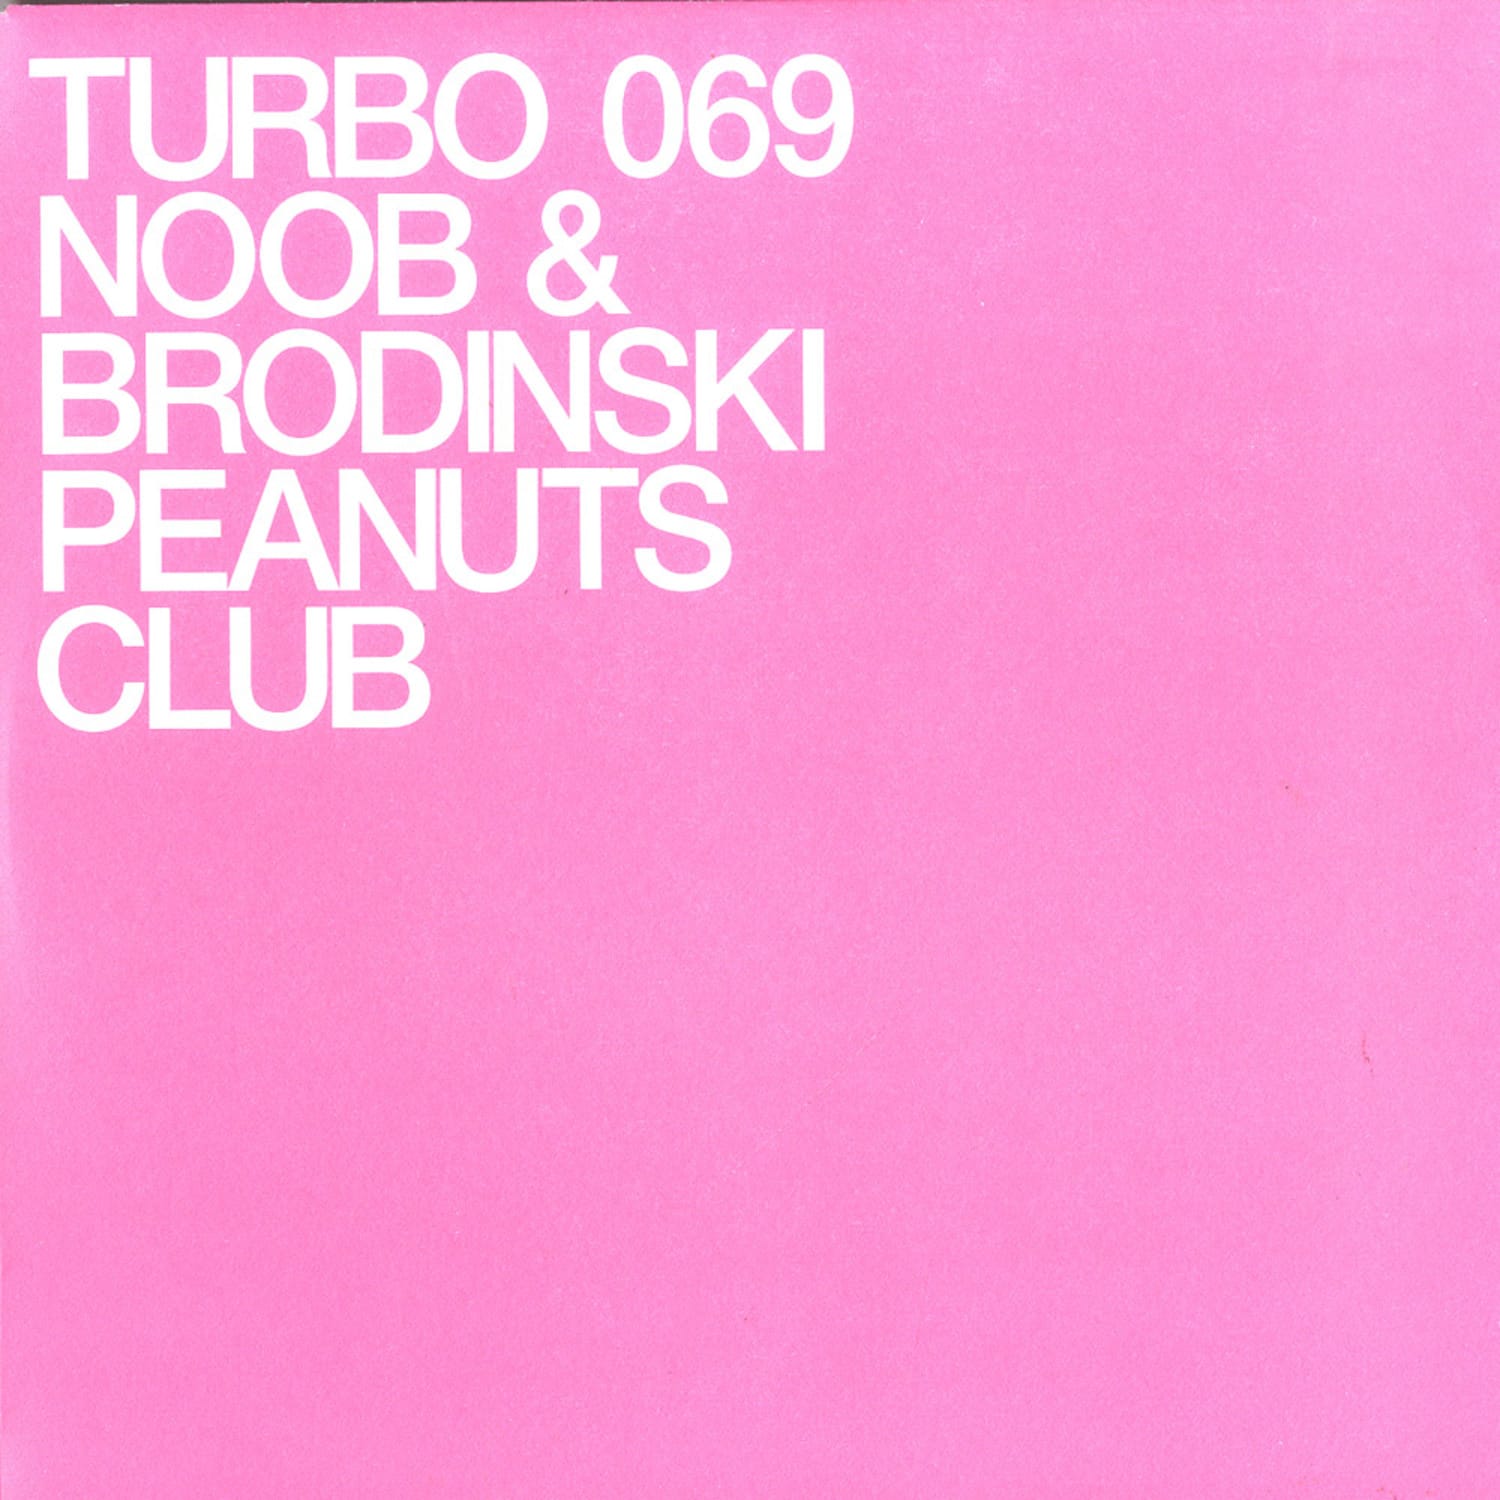 Noob & Brodins - PEANUTS CLUB